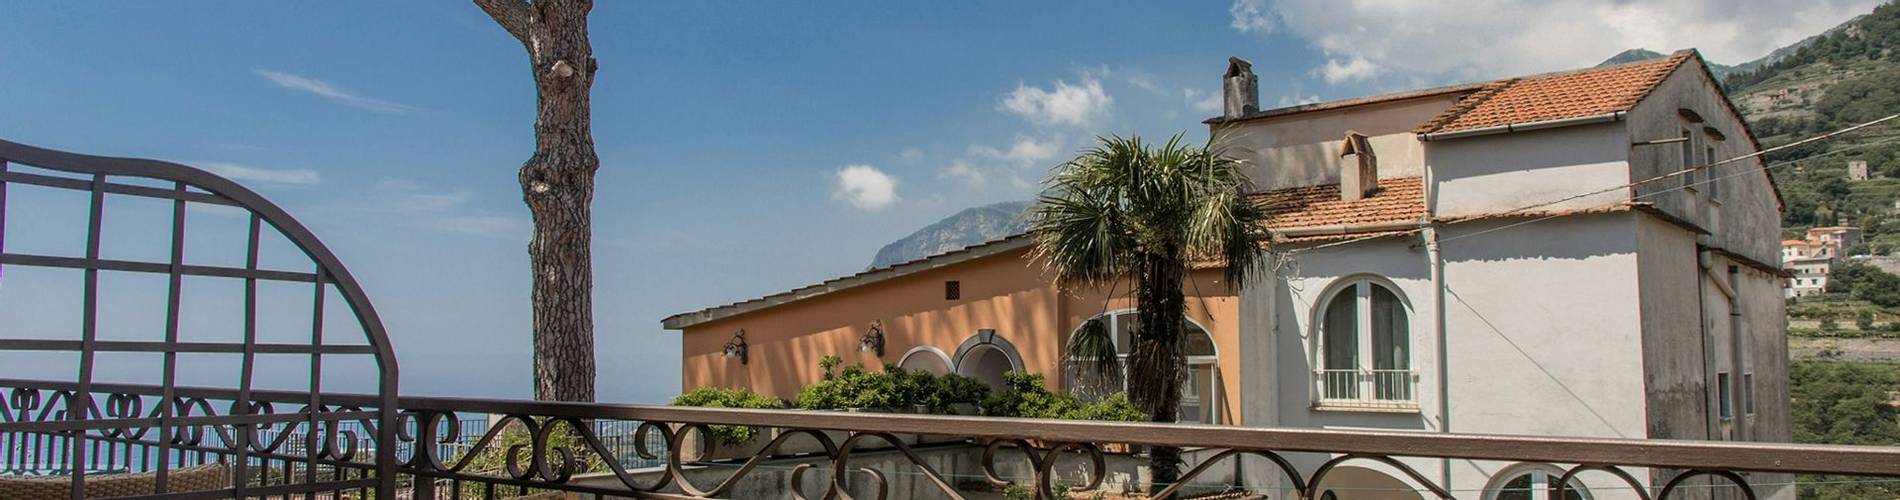 Villa Maria, Amalfi Coast, Italy, some of the French Balcony.jpg